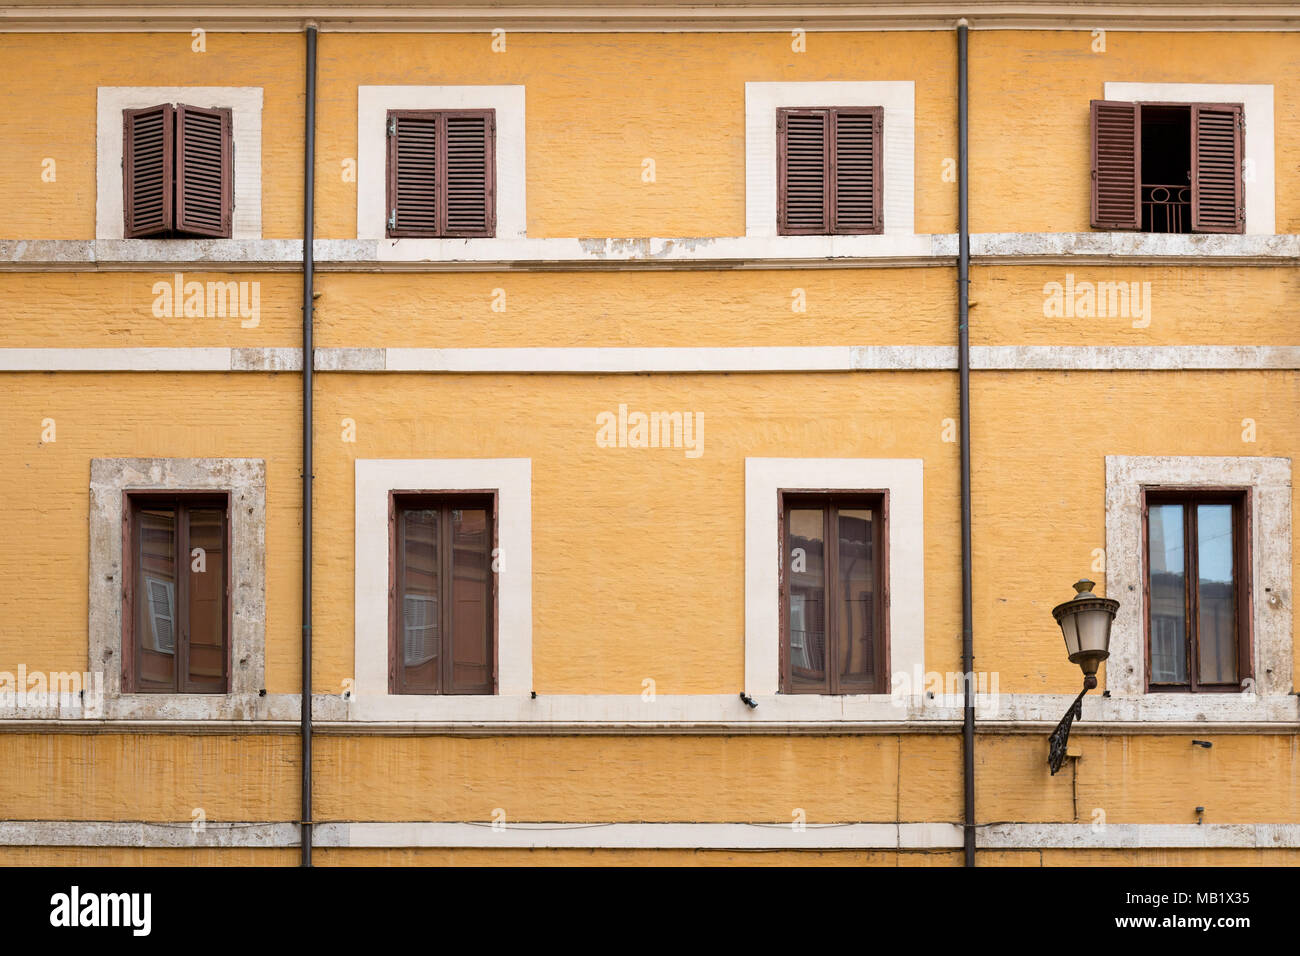 Un bâtiment au-dessus de la rue de Rome, Italie, avec briques peints en jaune et de volets en bois, une partie de la peinture est plus récente que le reste ! Ajouter cette Banque D'Images